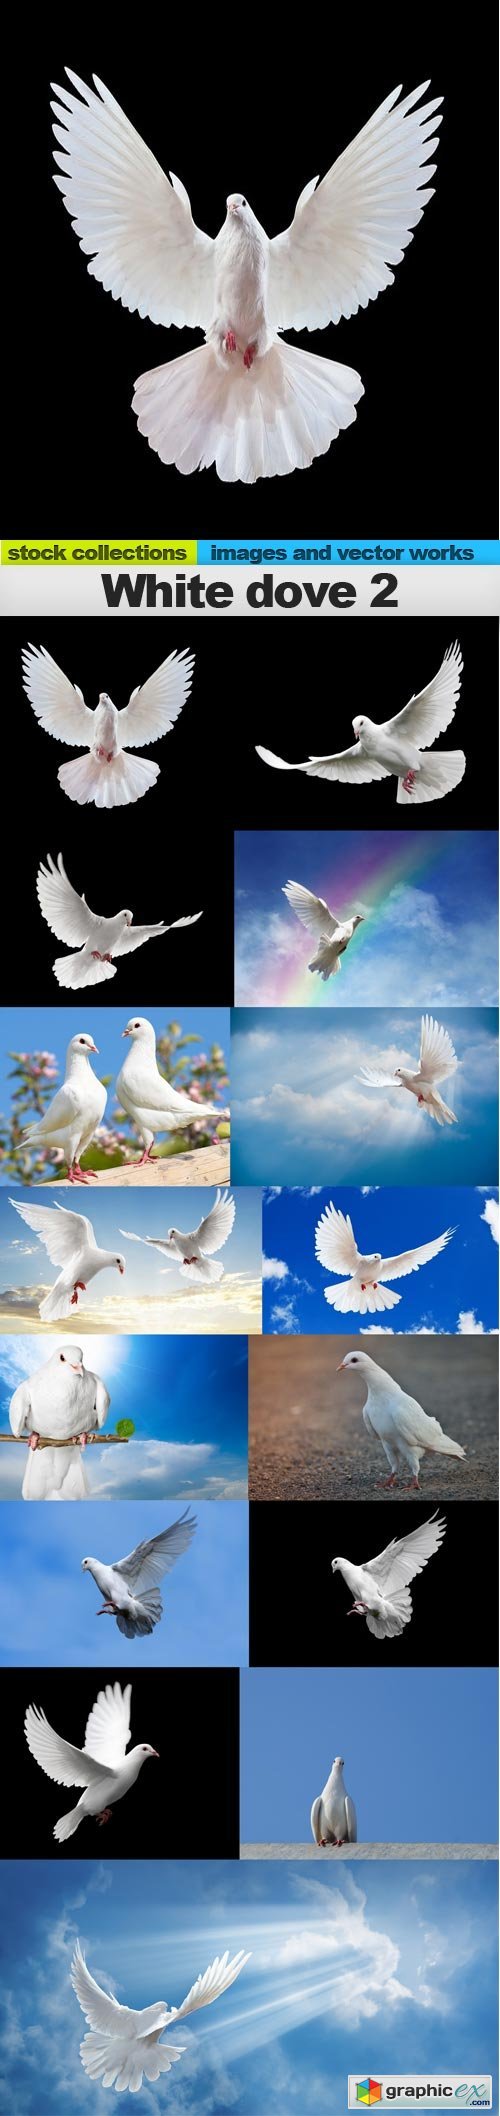 White dove 2, 15 x UHQ JPEG